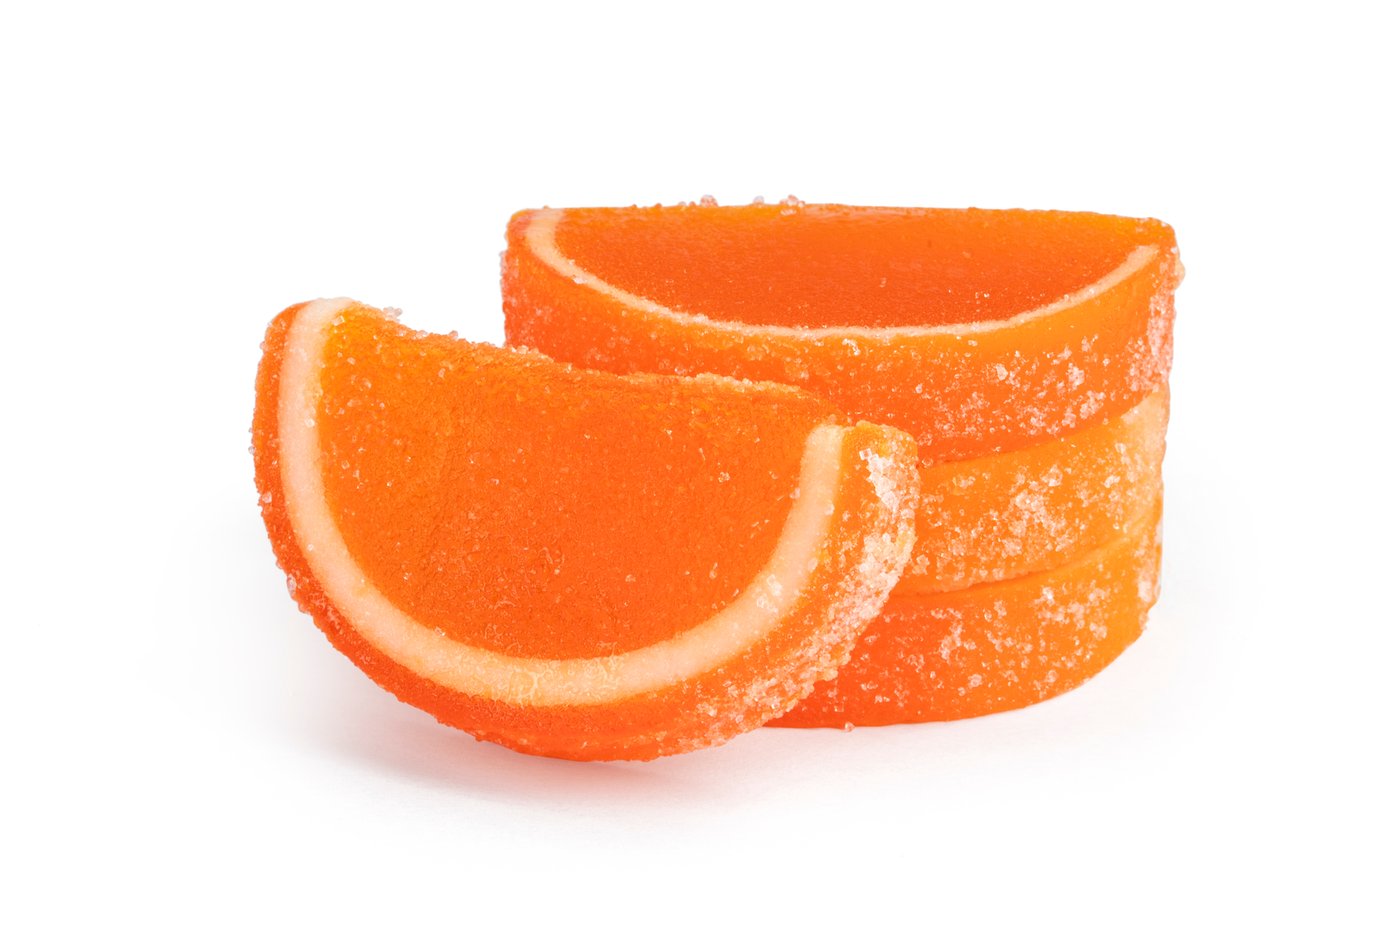 Orange Fruit Slices photo